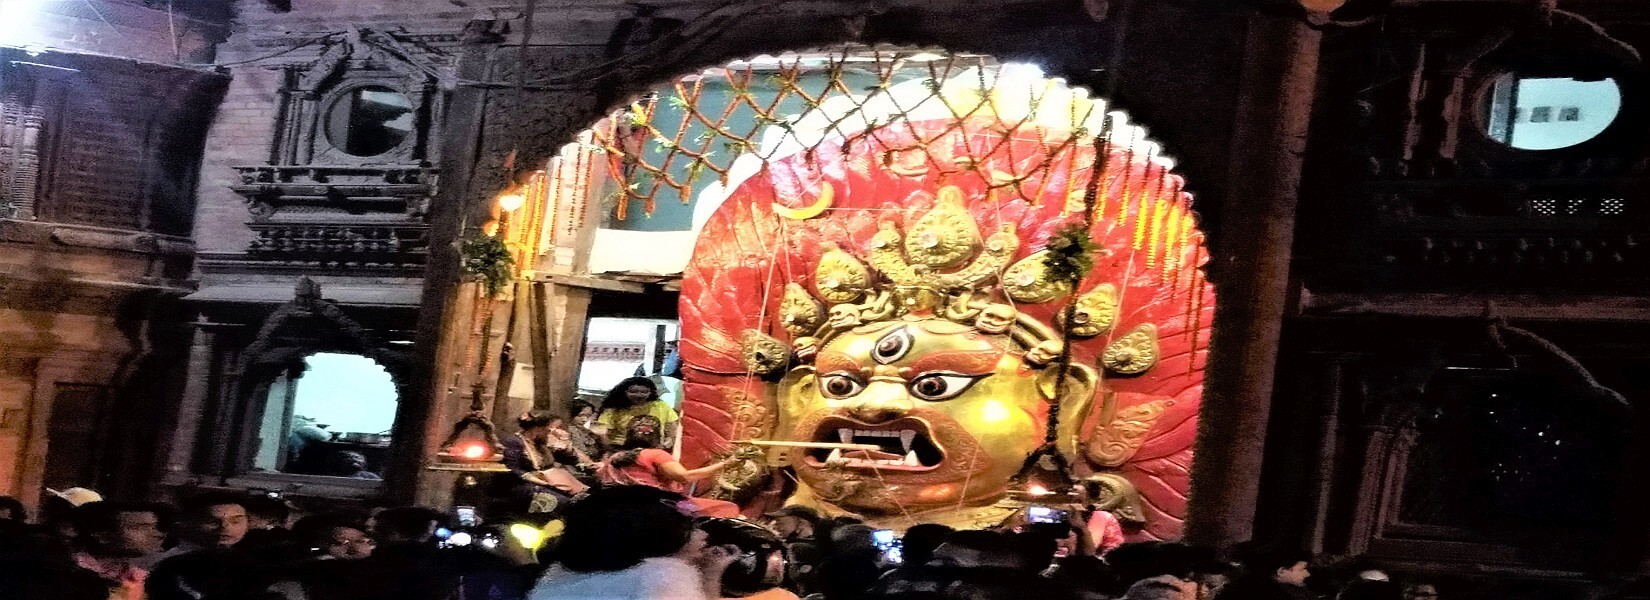 Festival in nepal